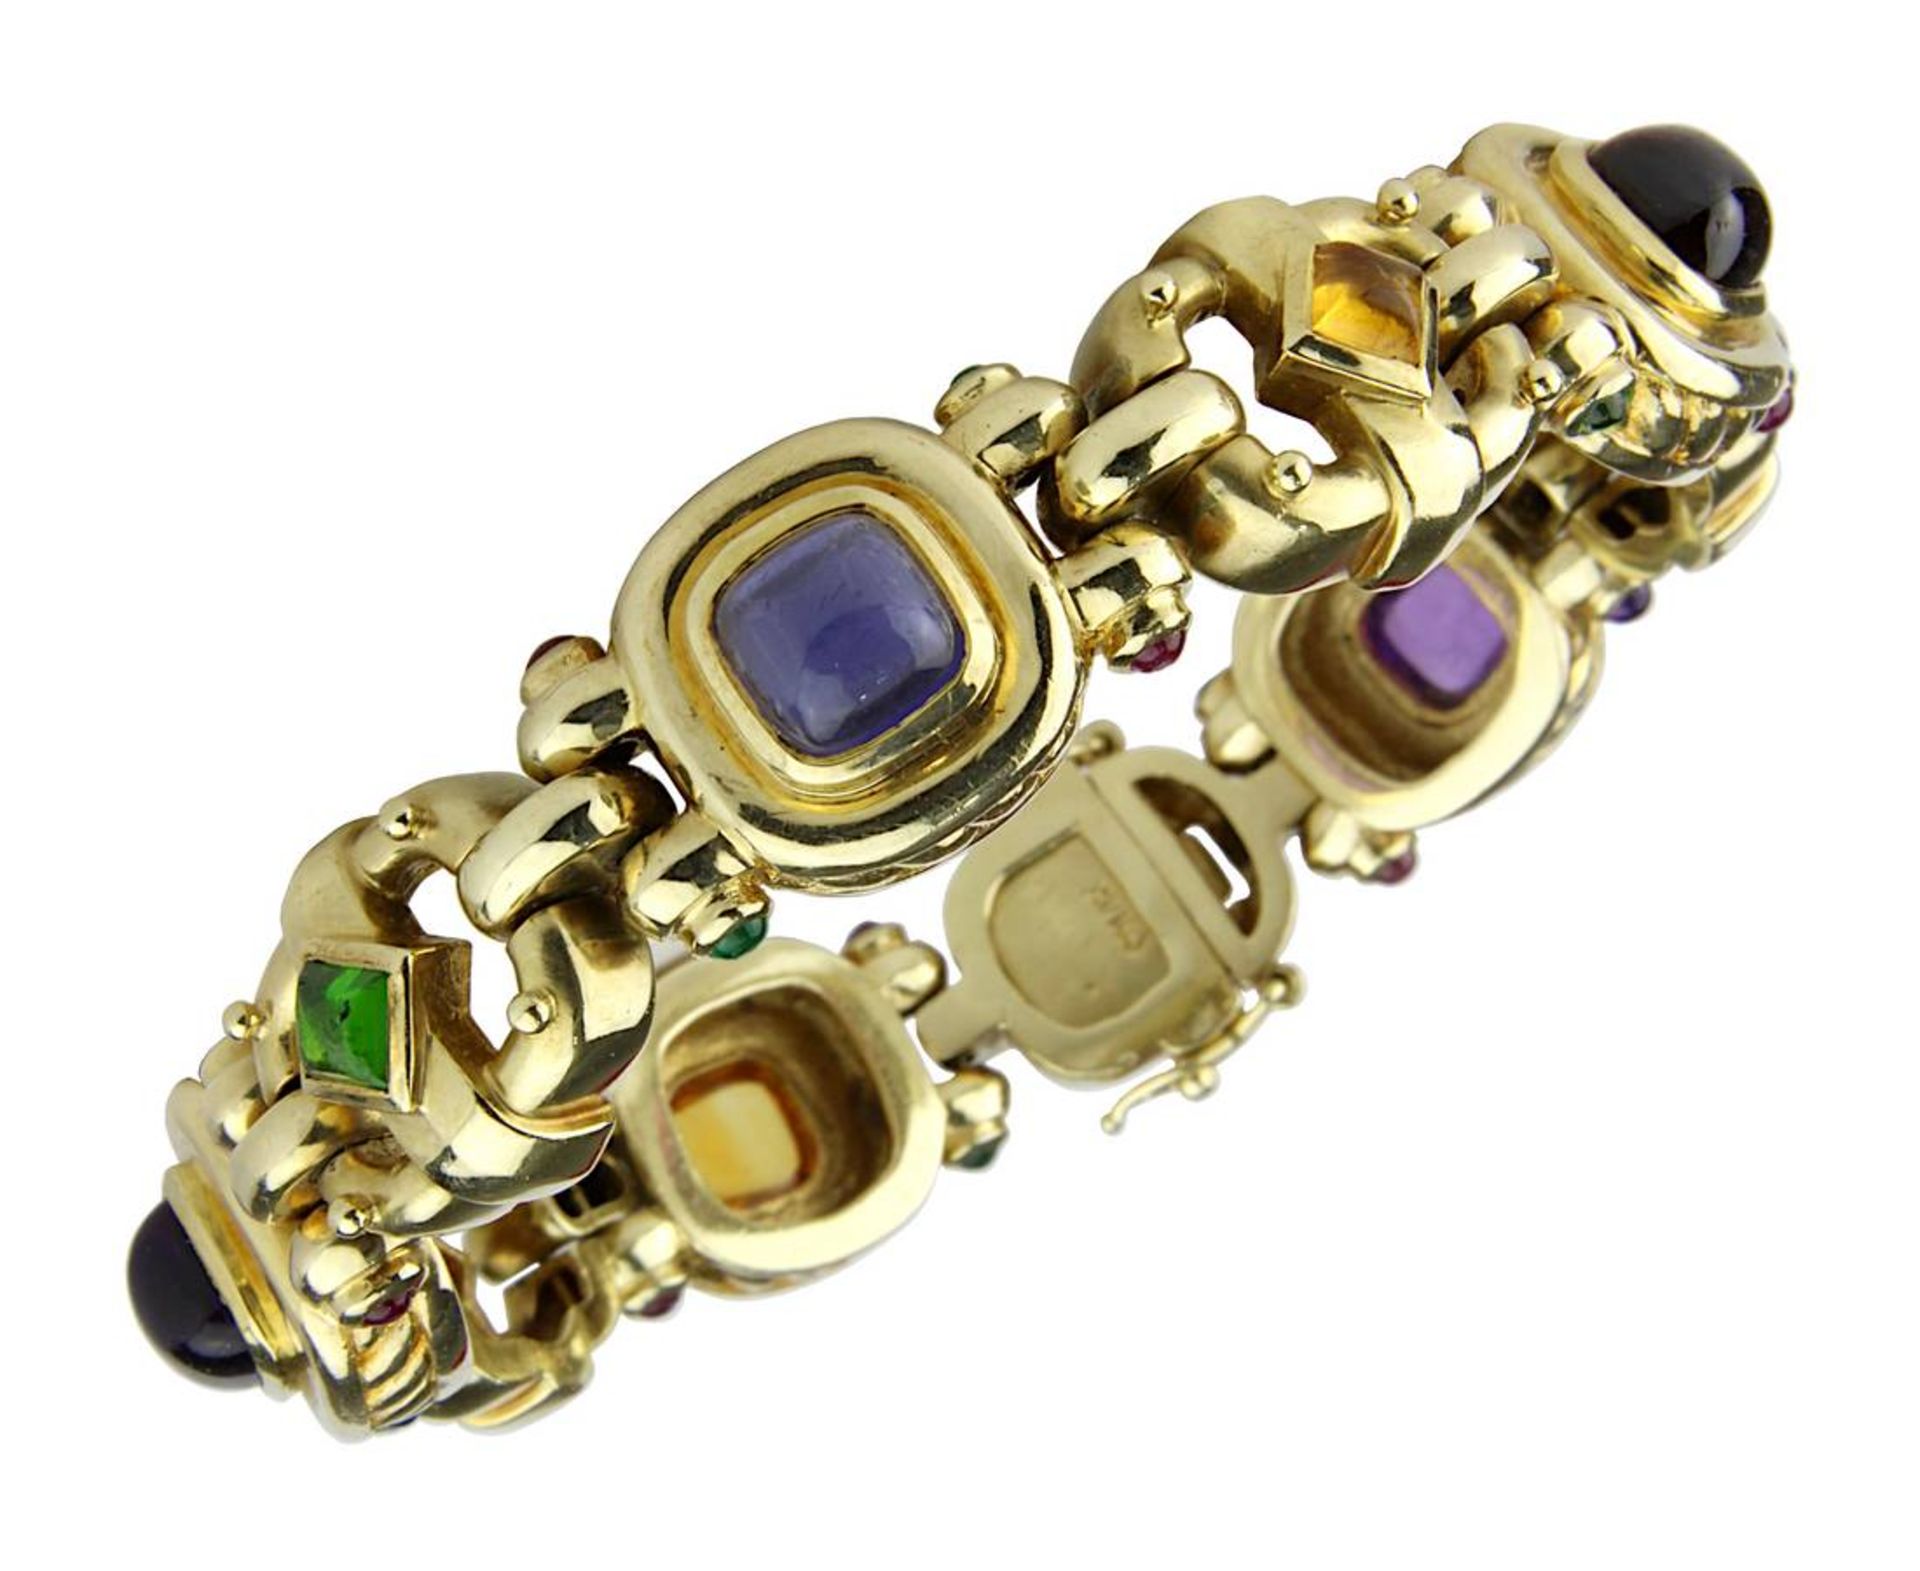 Gelbgold-Armband mit Edelsteinbesatz, gepunzt 585 und Herstellerzeichen MI, steigbügelförmige